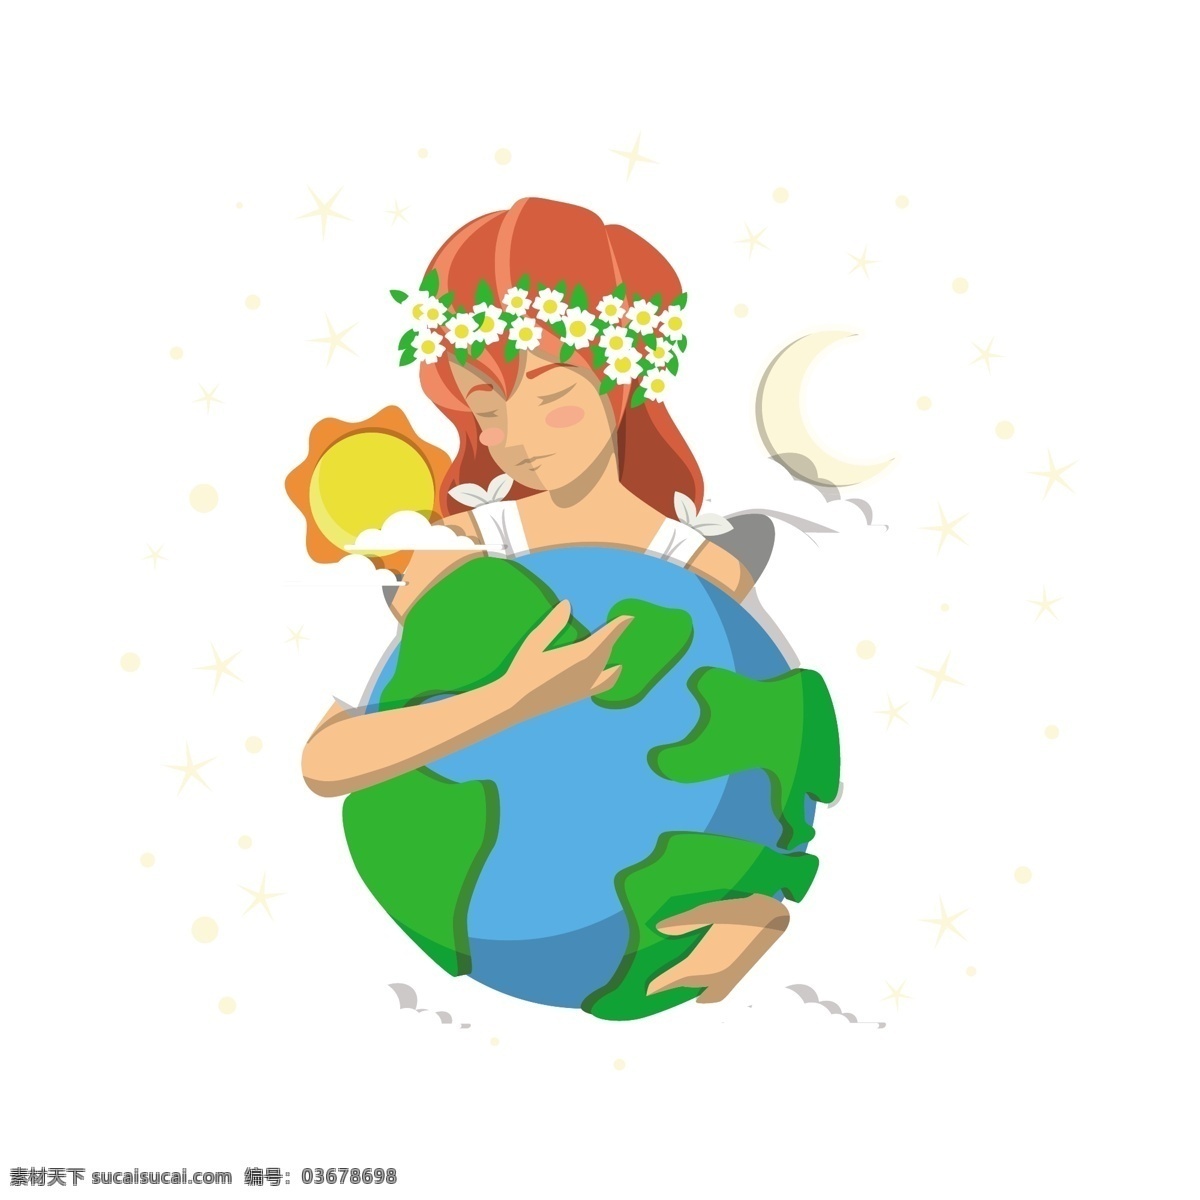 卡通 地球 母亲 矢量 地球的母亲 地球节 世界地球日 环境保护 绿色环境 太阳 太阳母亲 地球母亲